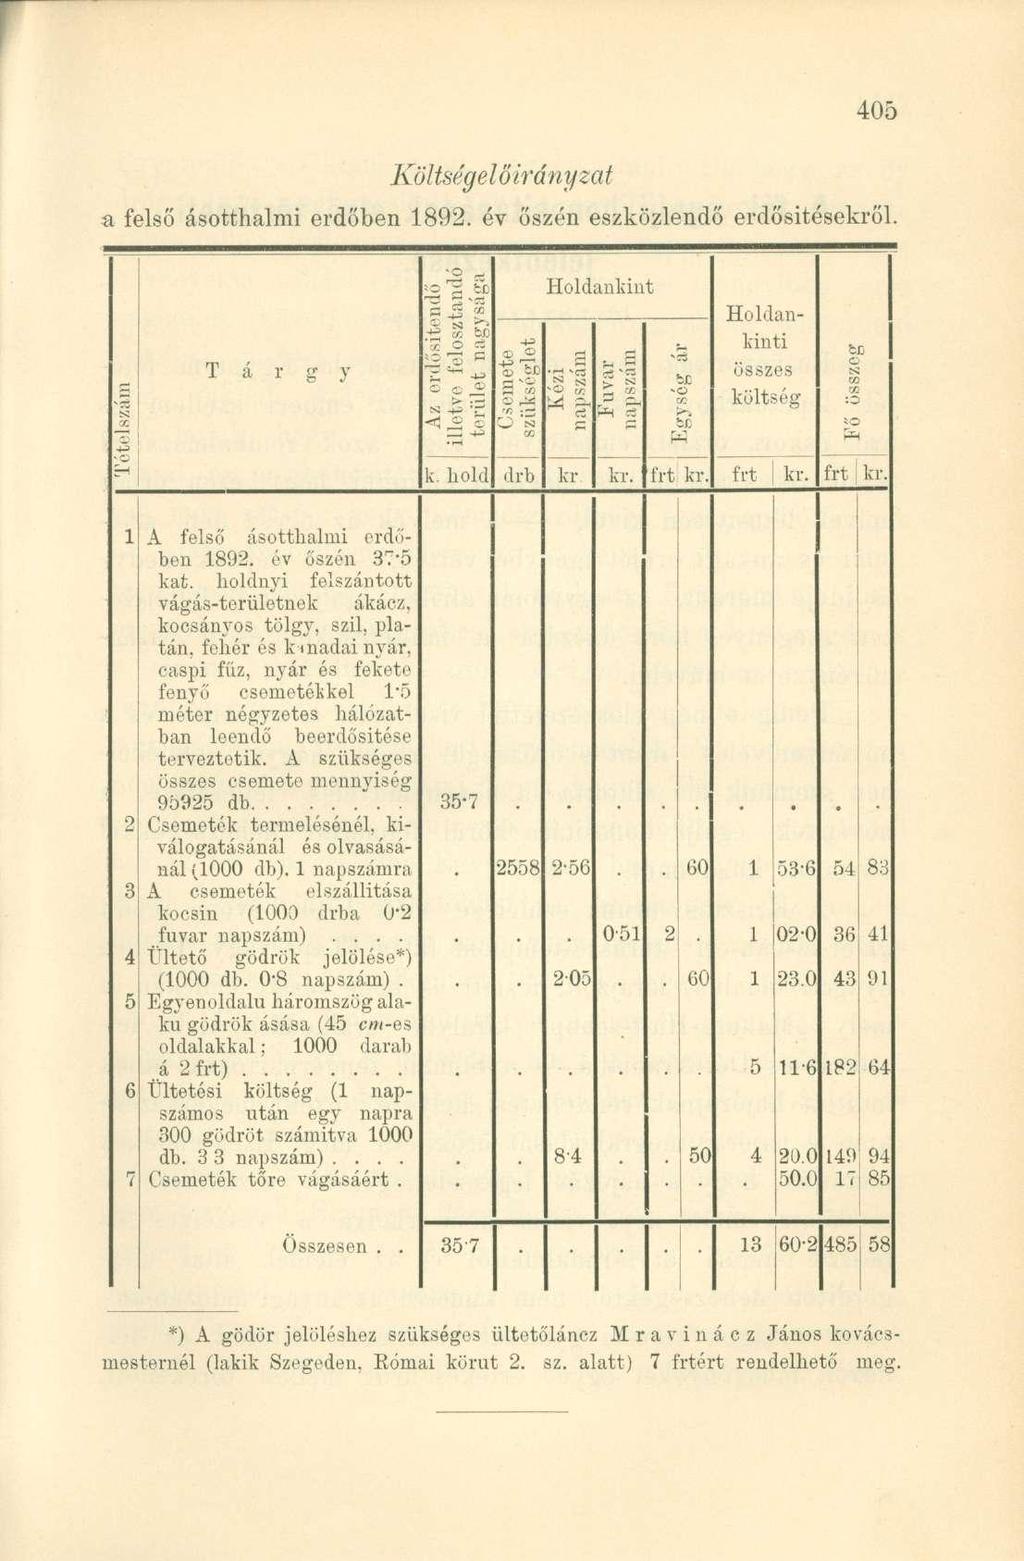 Költségelőirányzat a felső ásotthalmi erdőben 1892. év őszén eszközlendő erdősítésekről. k. hold Holdankint -7. W - fl frt kr. Holdankinti összes költség frt kr.